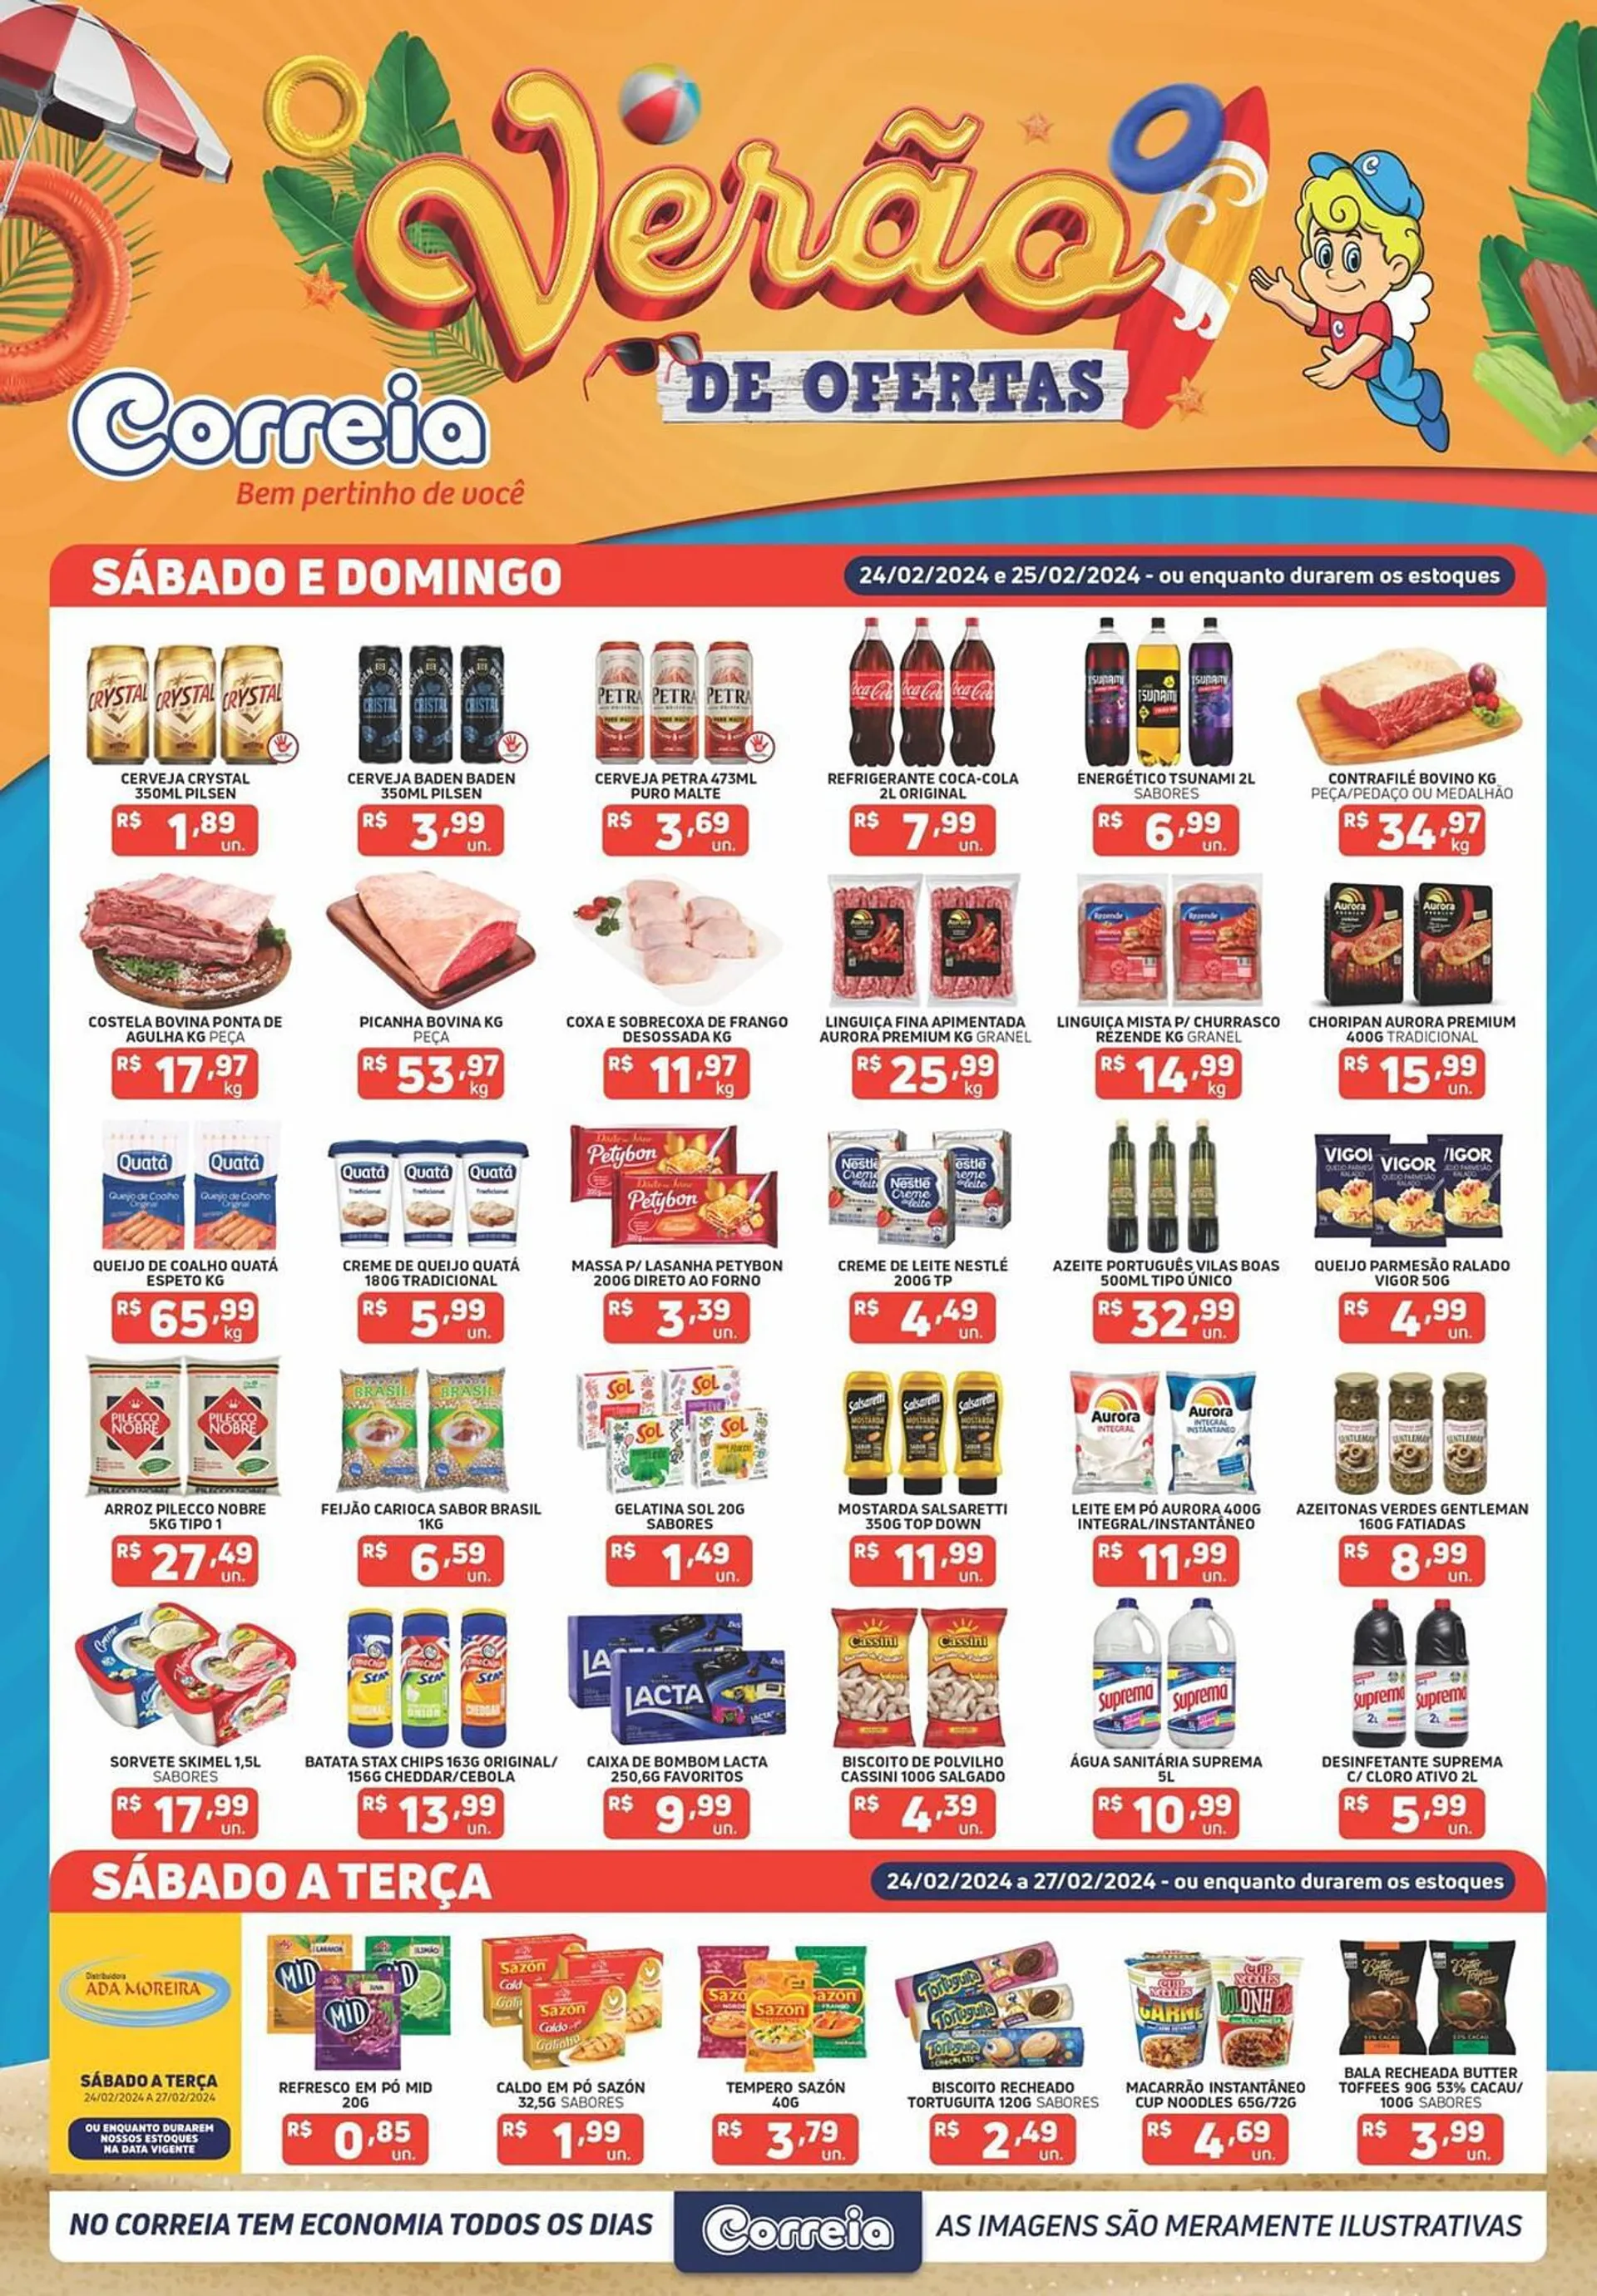 Encarte de Catálogo Supermercados Correia 26 de fevereiro até 27 de fevereiro 2024 - Pagina 